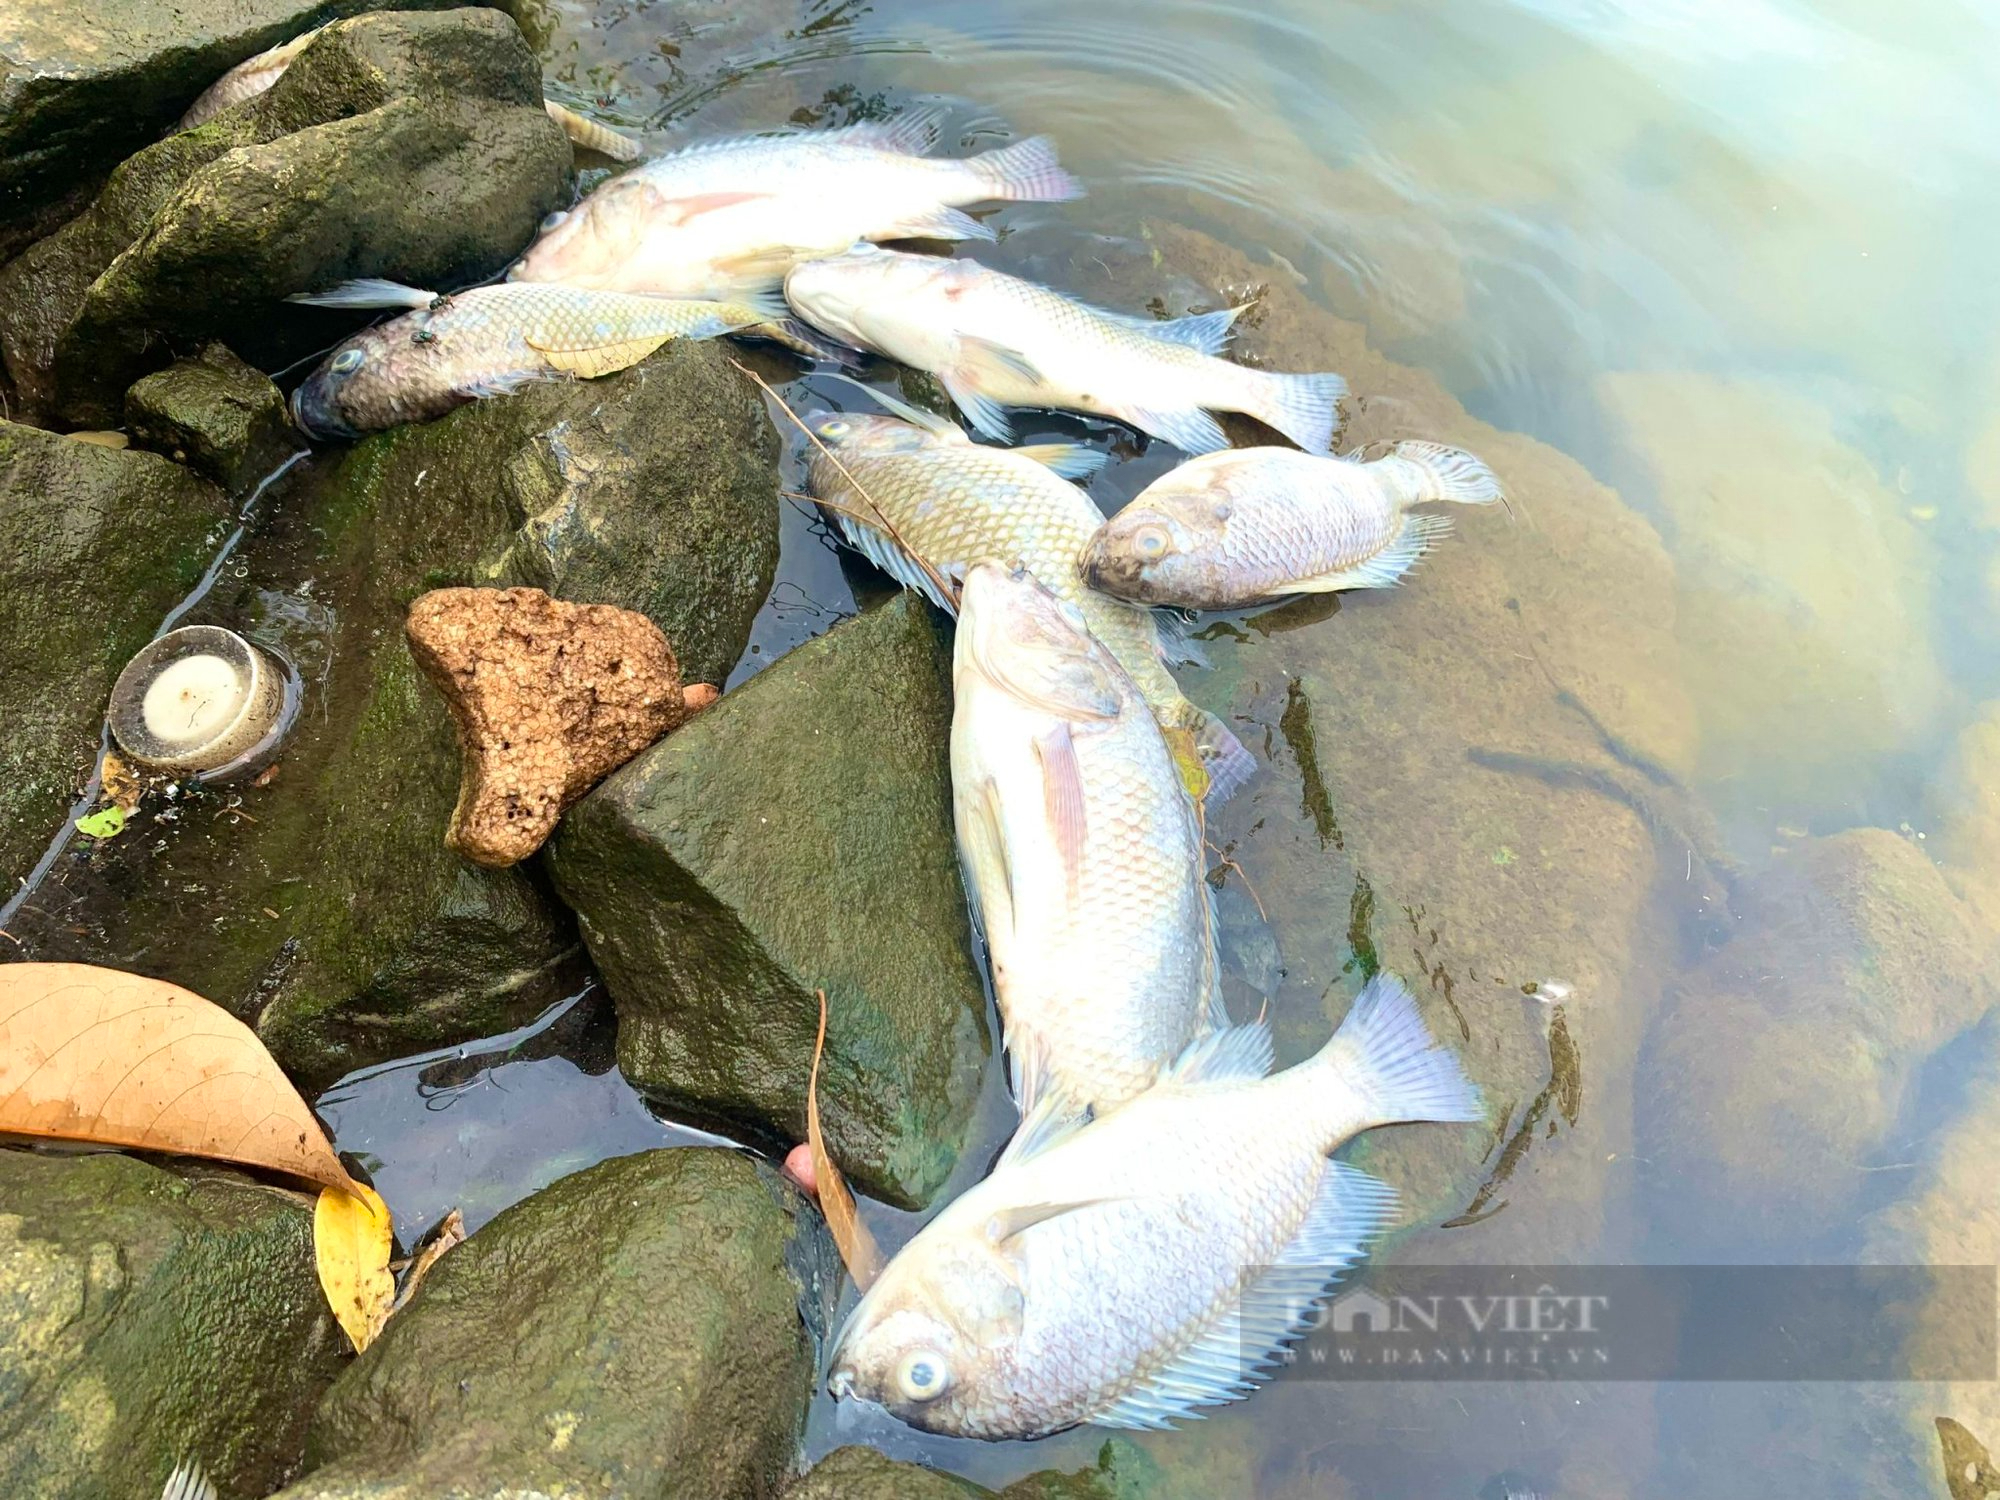 Quảng Bình: Cá chết hàng loạt trong hồ nước cạnh dự án Nhiệt điện Quảng Trạch - Ảnh 4.